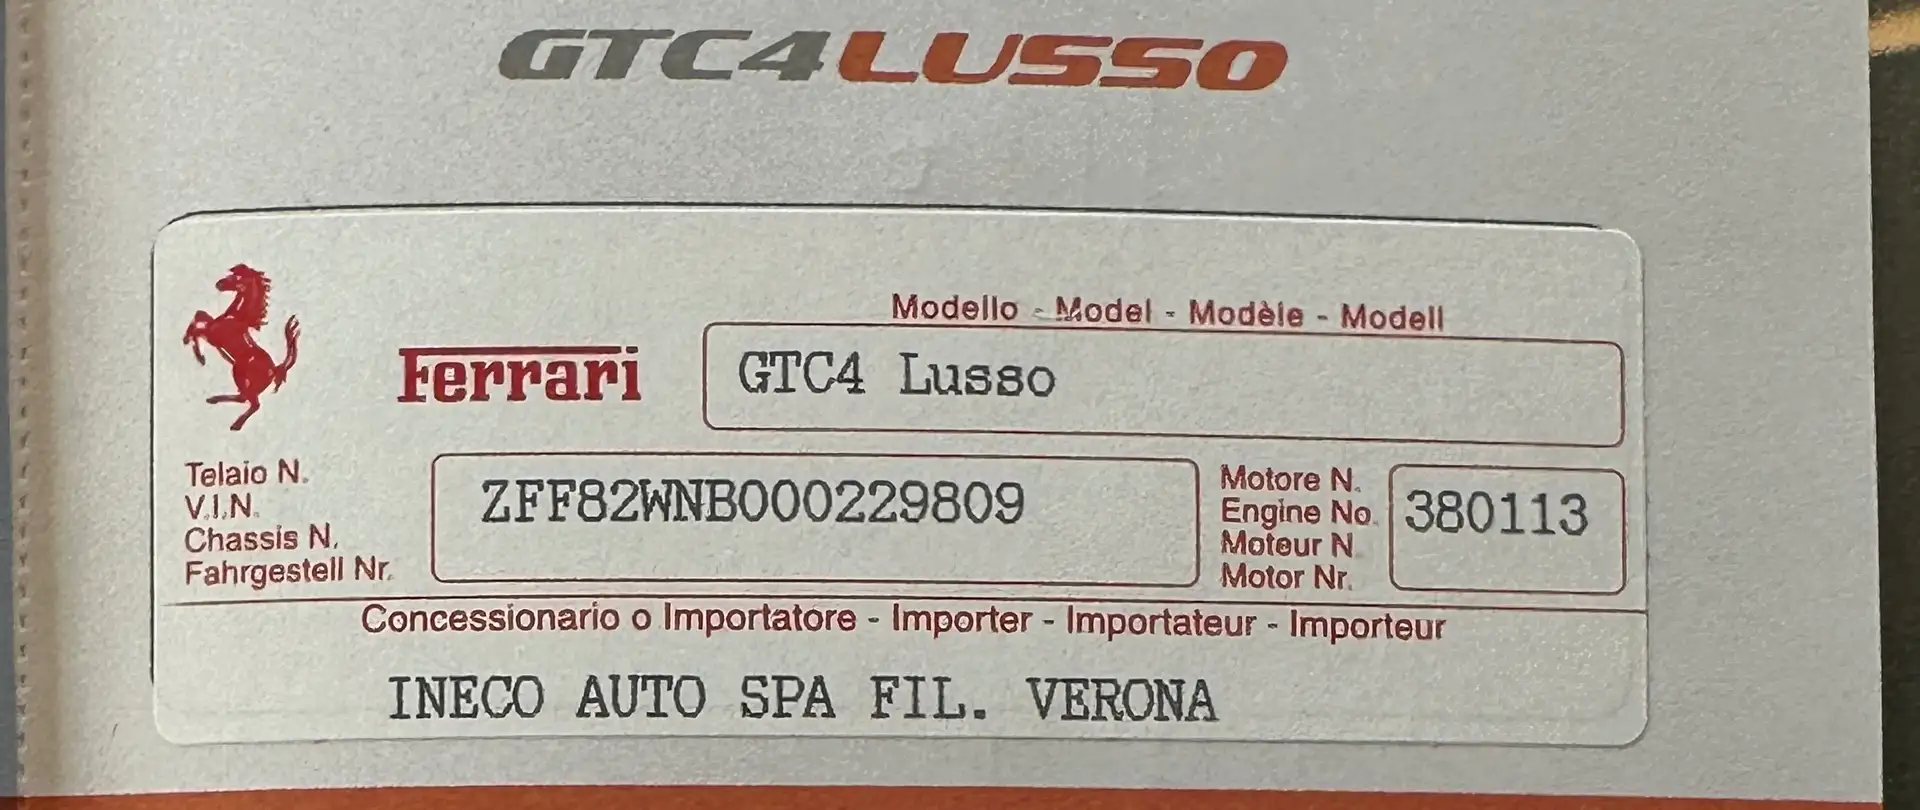 Ferrari GTC4 Lusso V12 - LEGGERE DESCRIZIONE - CERTIFICATA 100% siva - 1